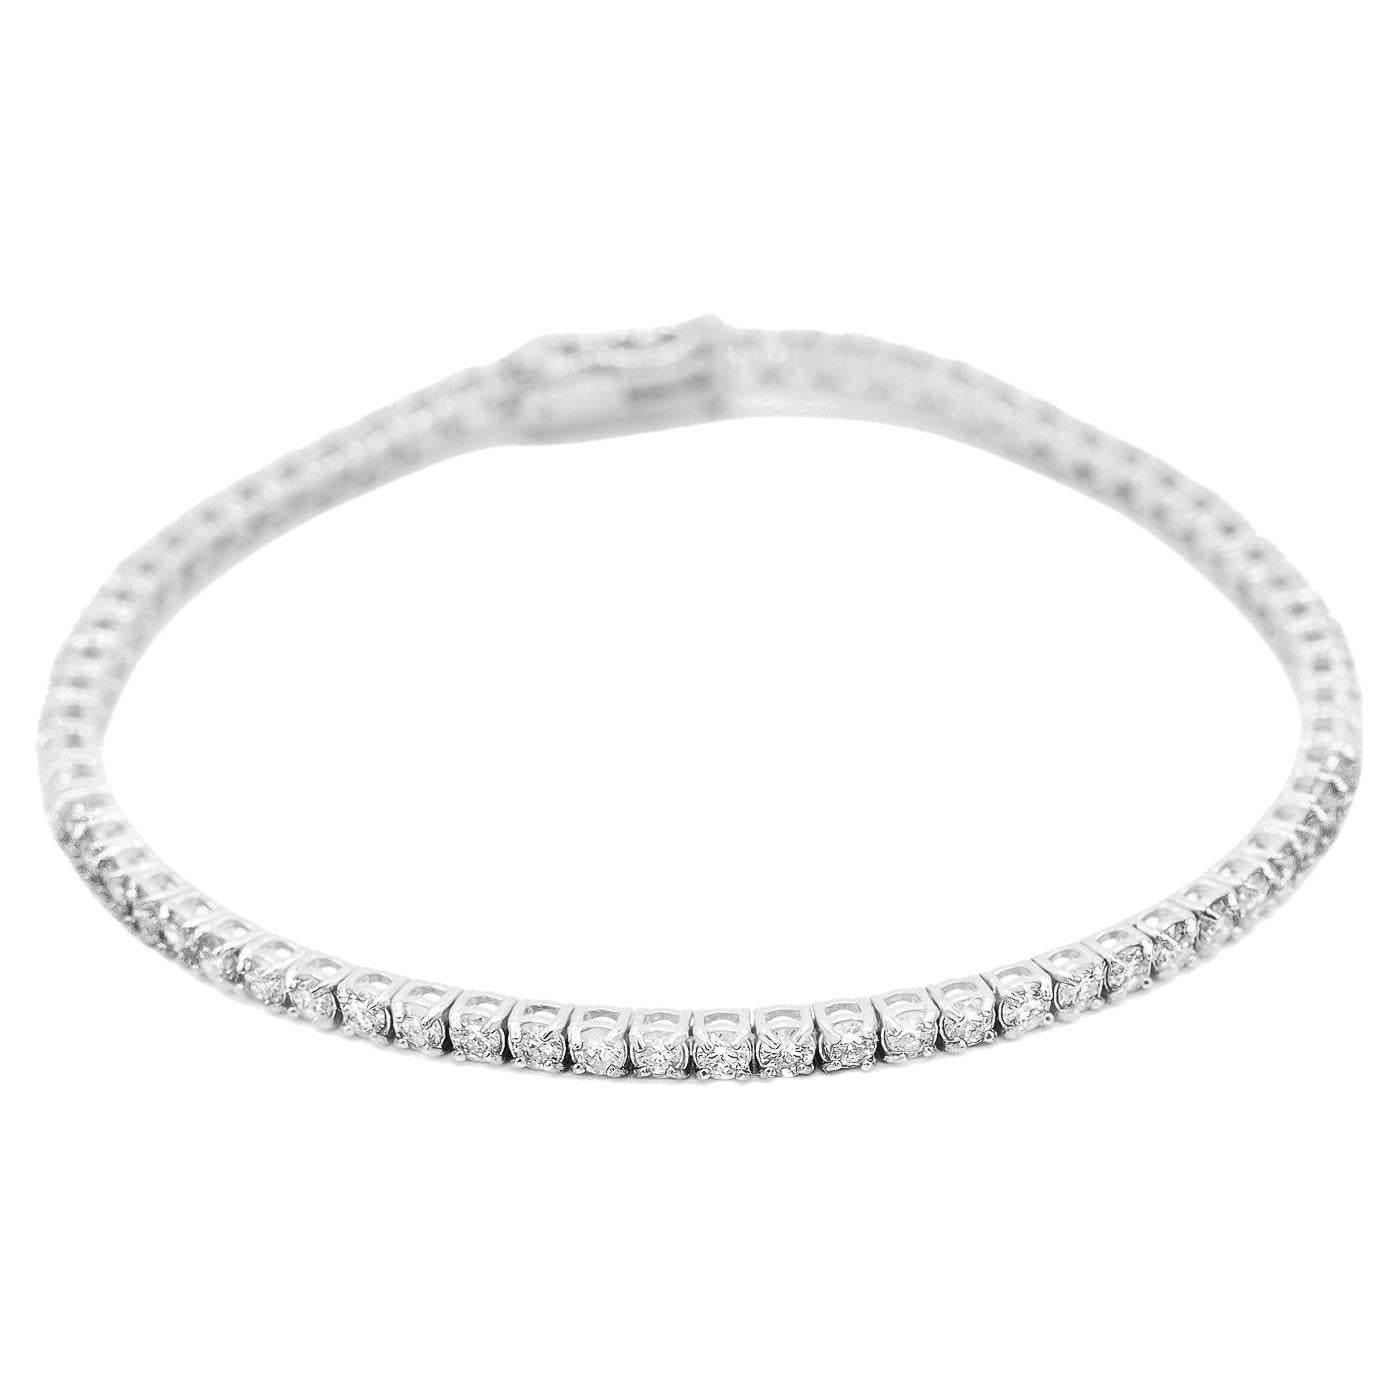 Ladies 10K White Gold Diamond Tennis Bracelet